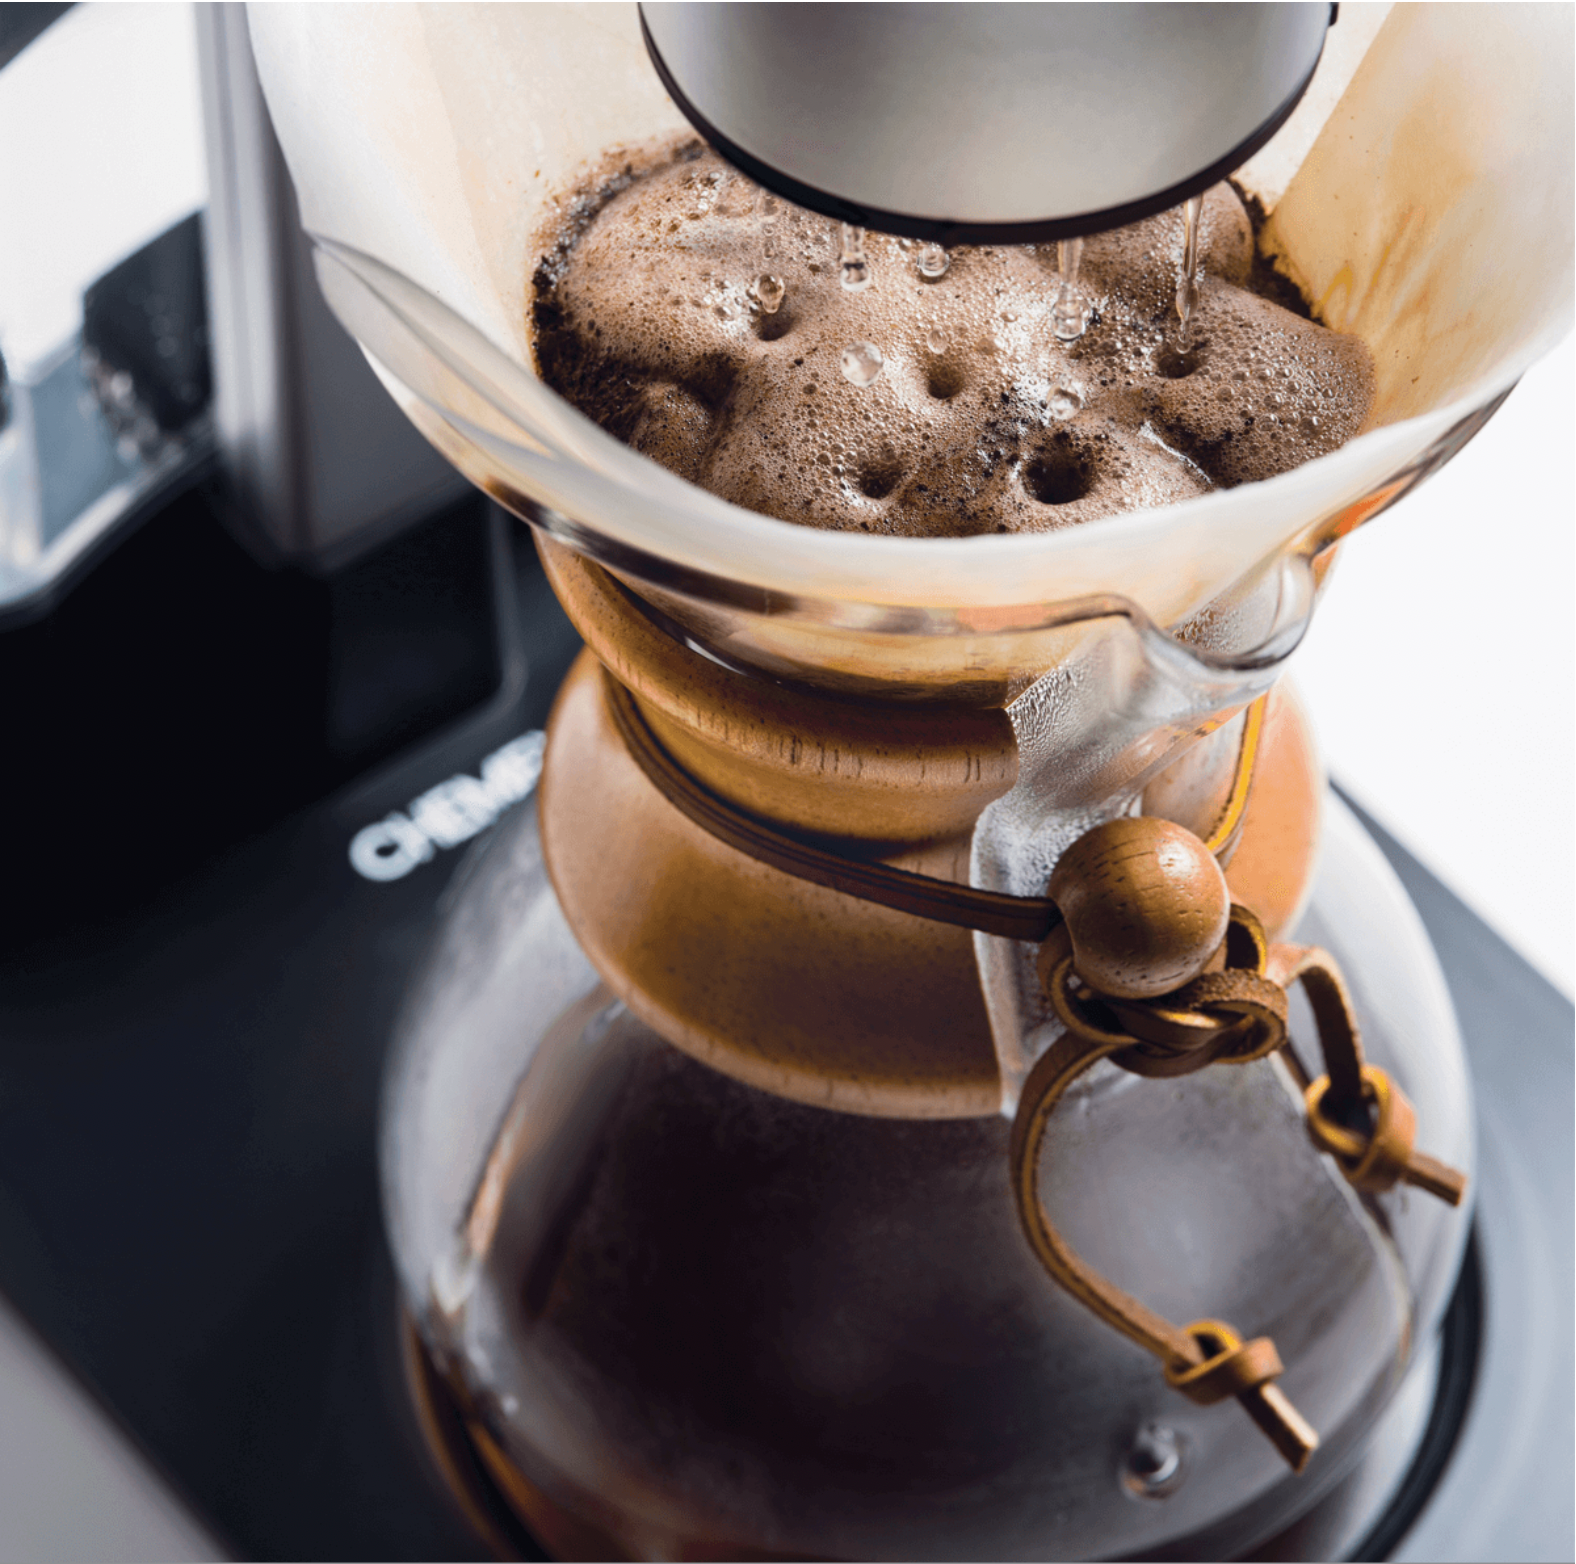 كيميكس آلة أوتوماتيك ٢.٠ لتحضير القهوة